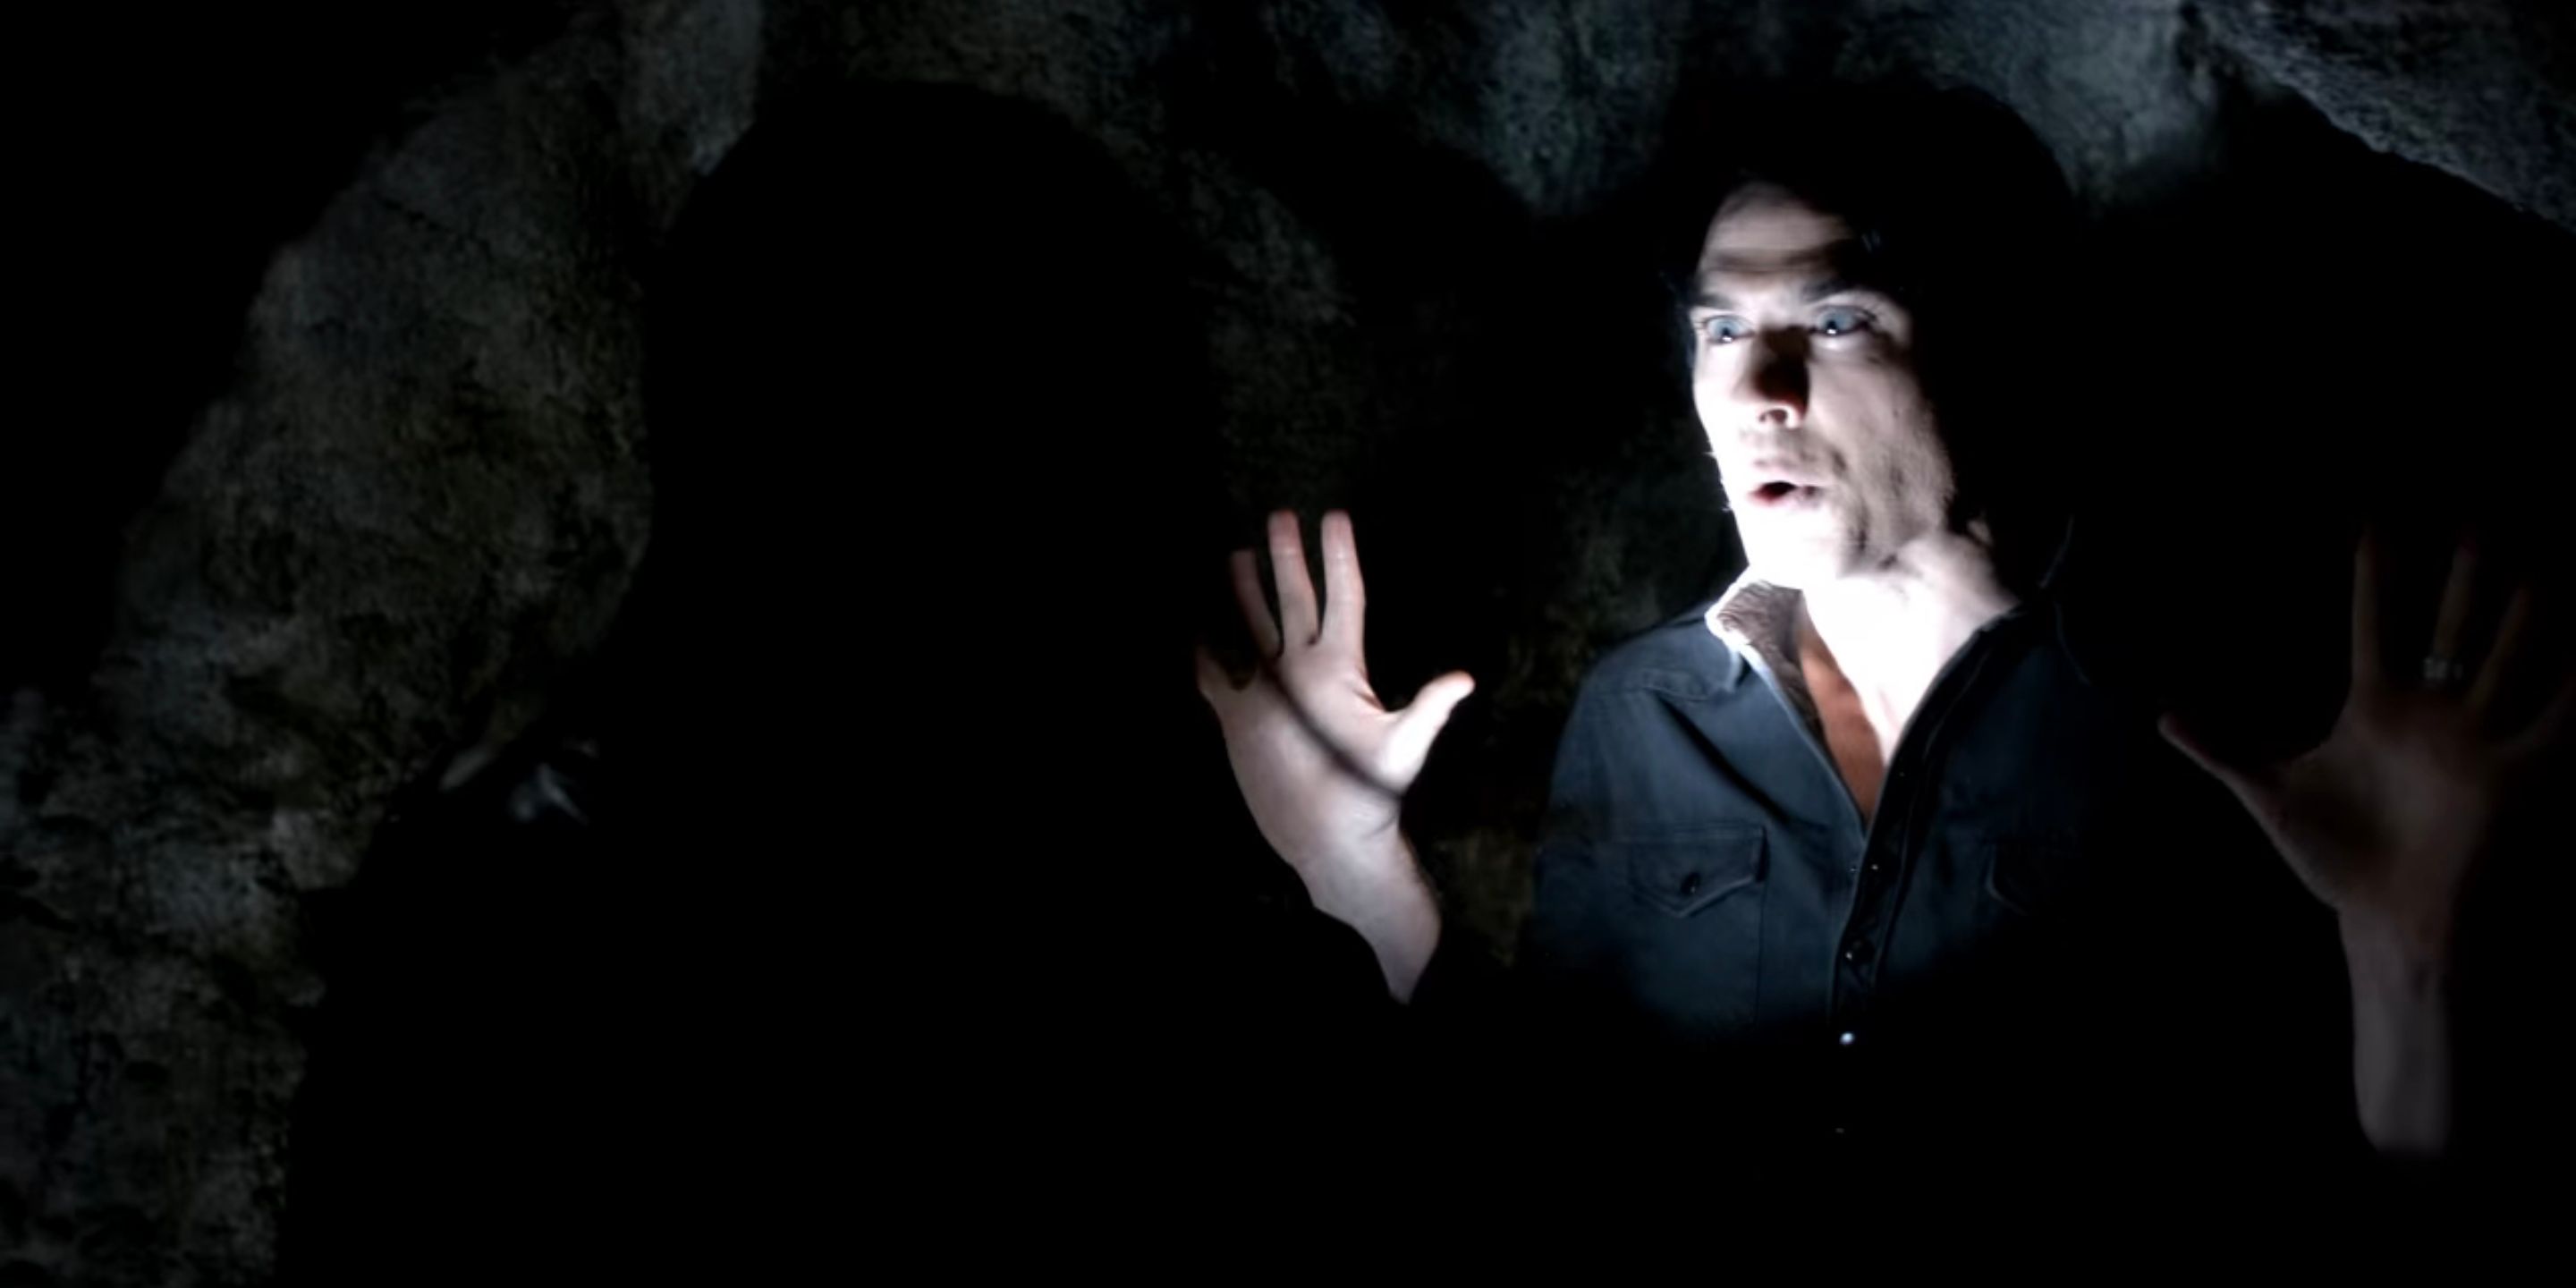 Damon scaring Elena in The Vampire Diaries.